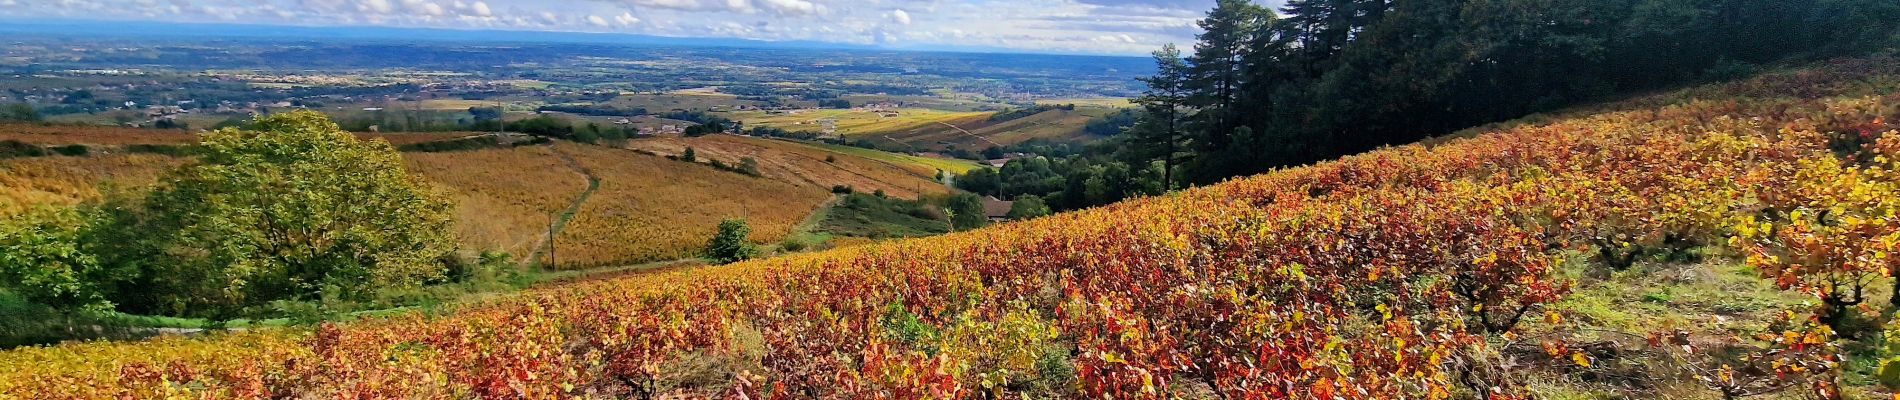 Randonnée Marche Chiroubles - Itinérant Beaujolais rouge étape 5 Chiroubles- Foretal - Photo